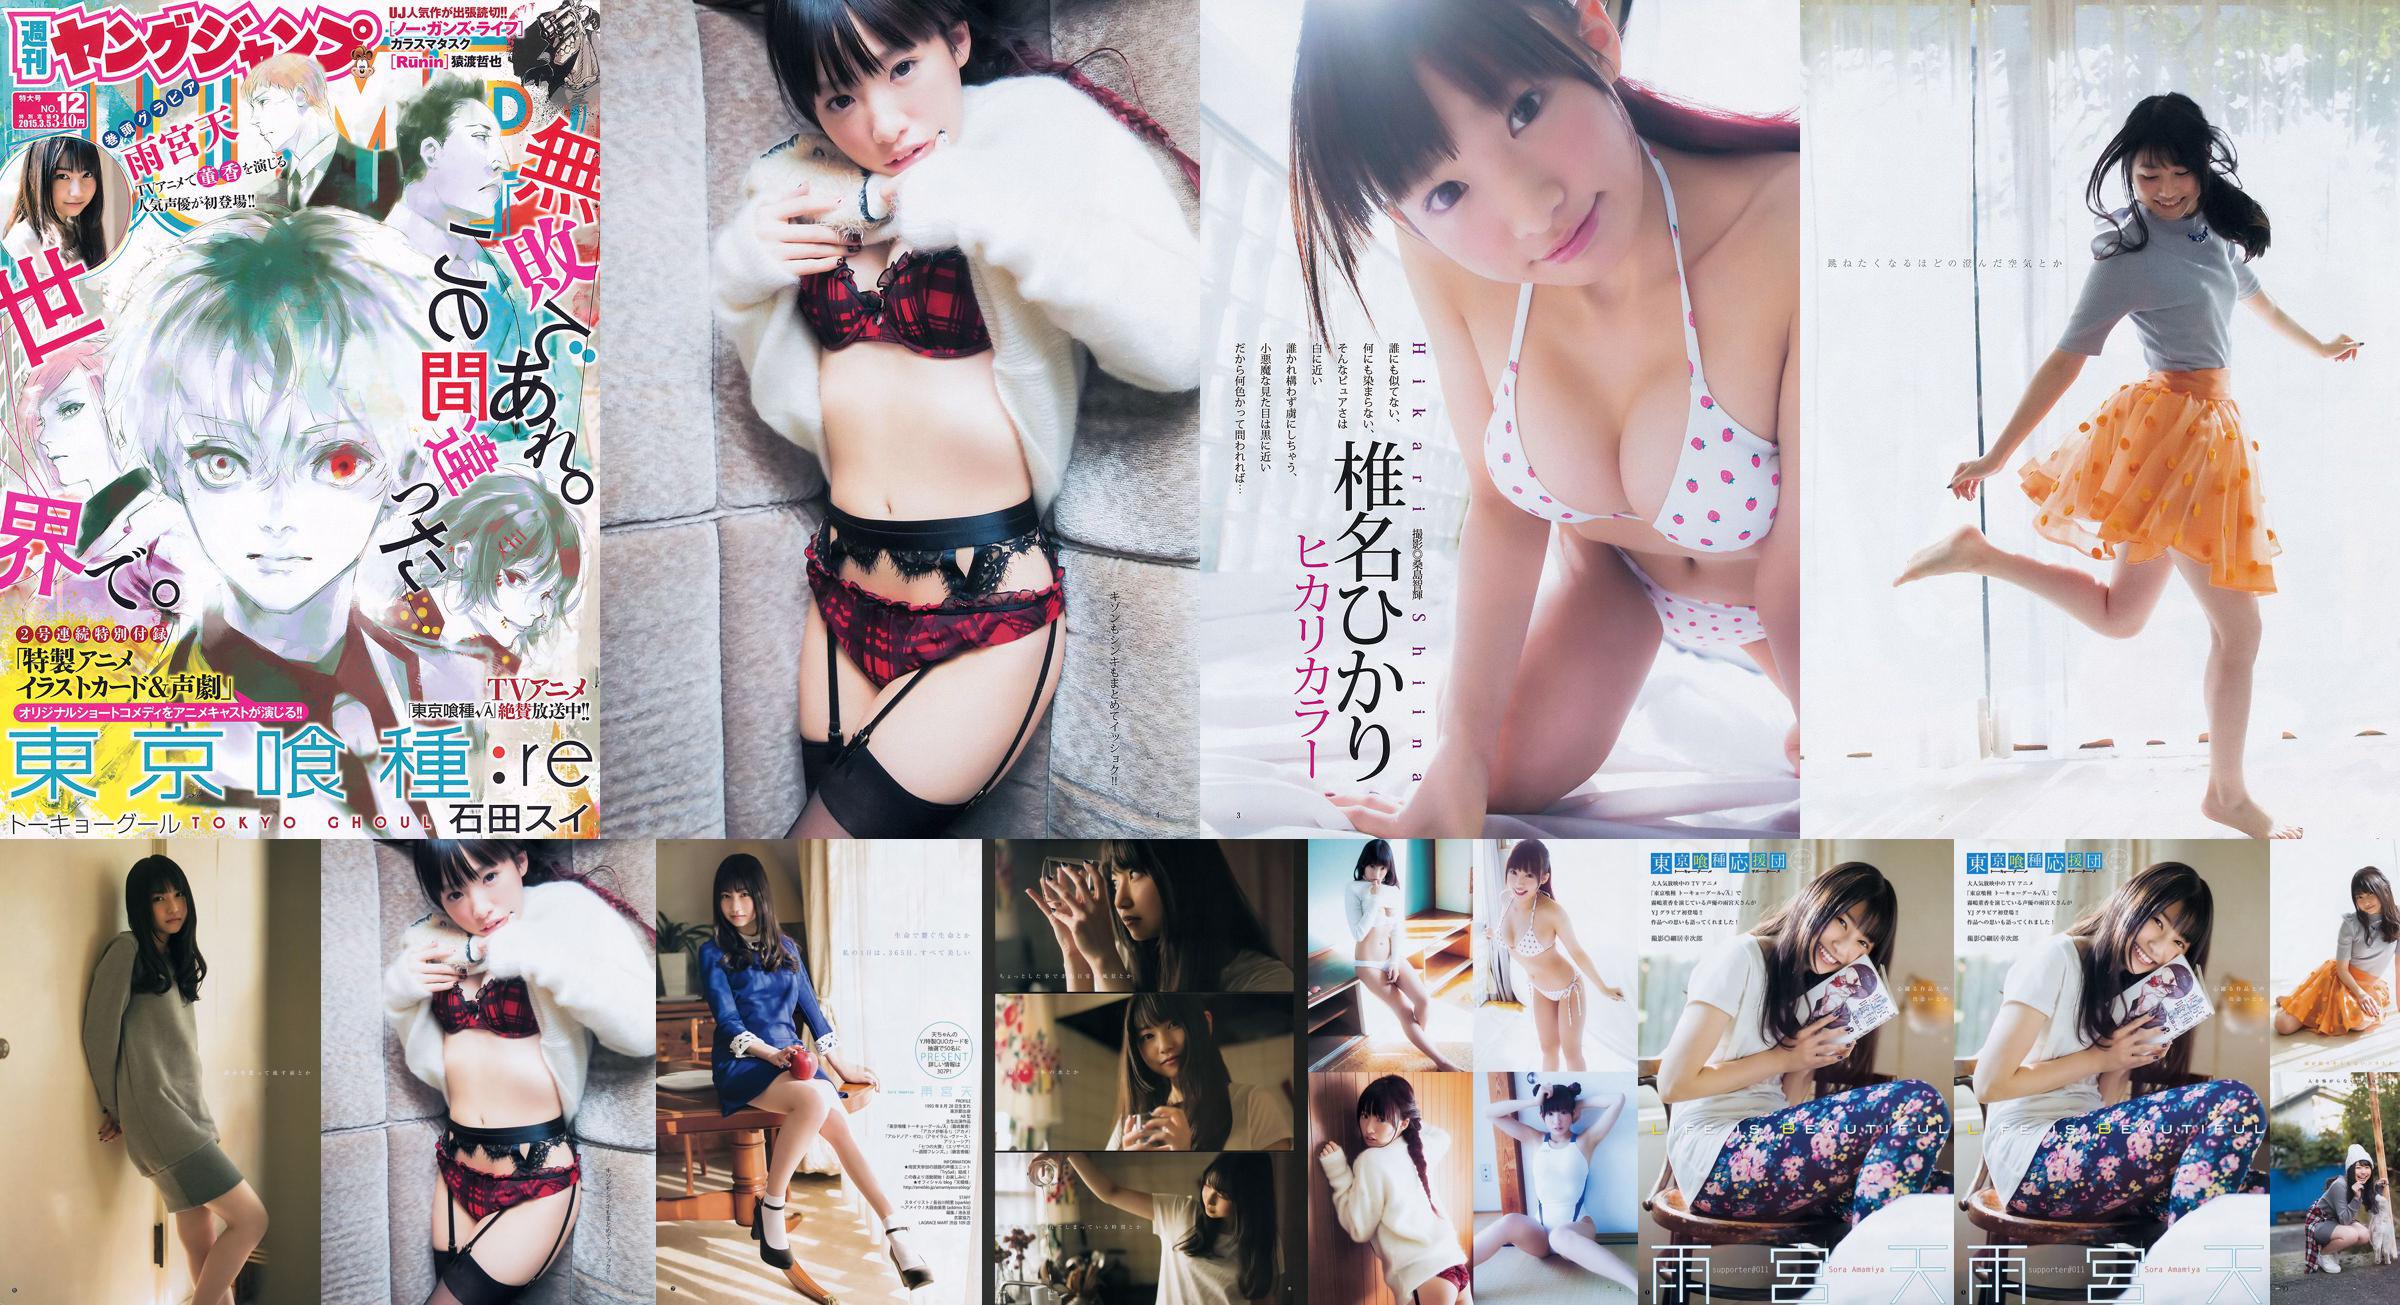 Amamiya Tian Shiina ひかり [Weekly Young Jump] 2015 No.12 Photo Magazine No.5b053e Página 1